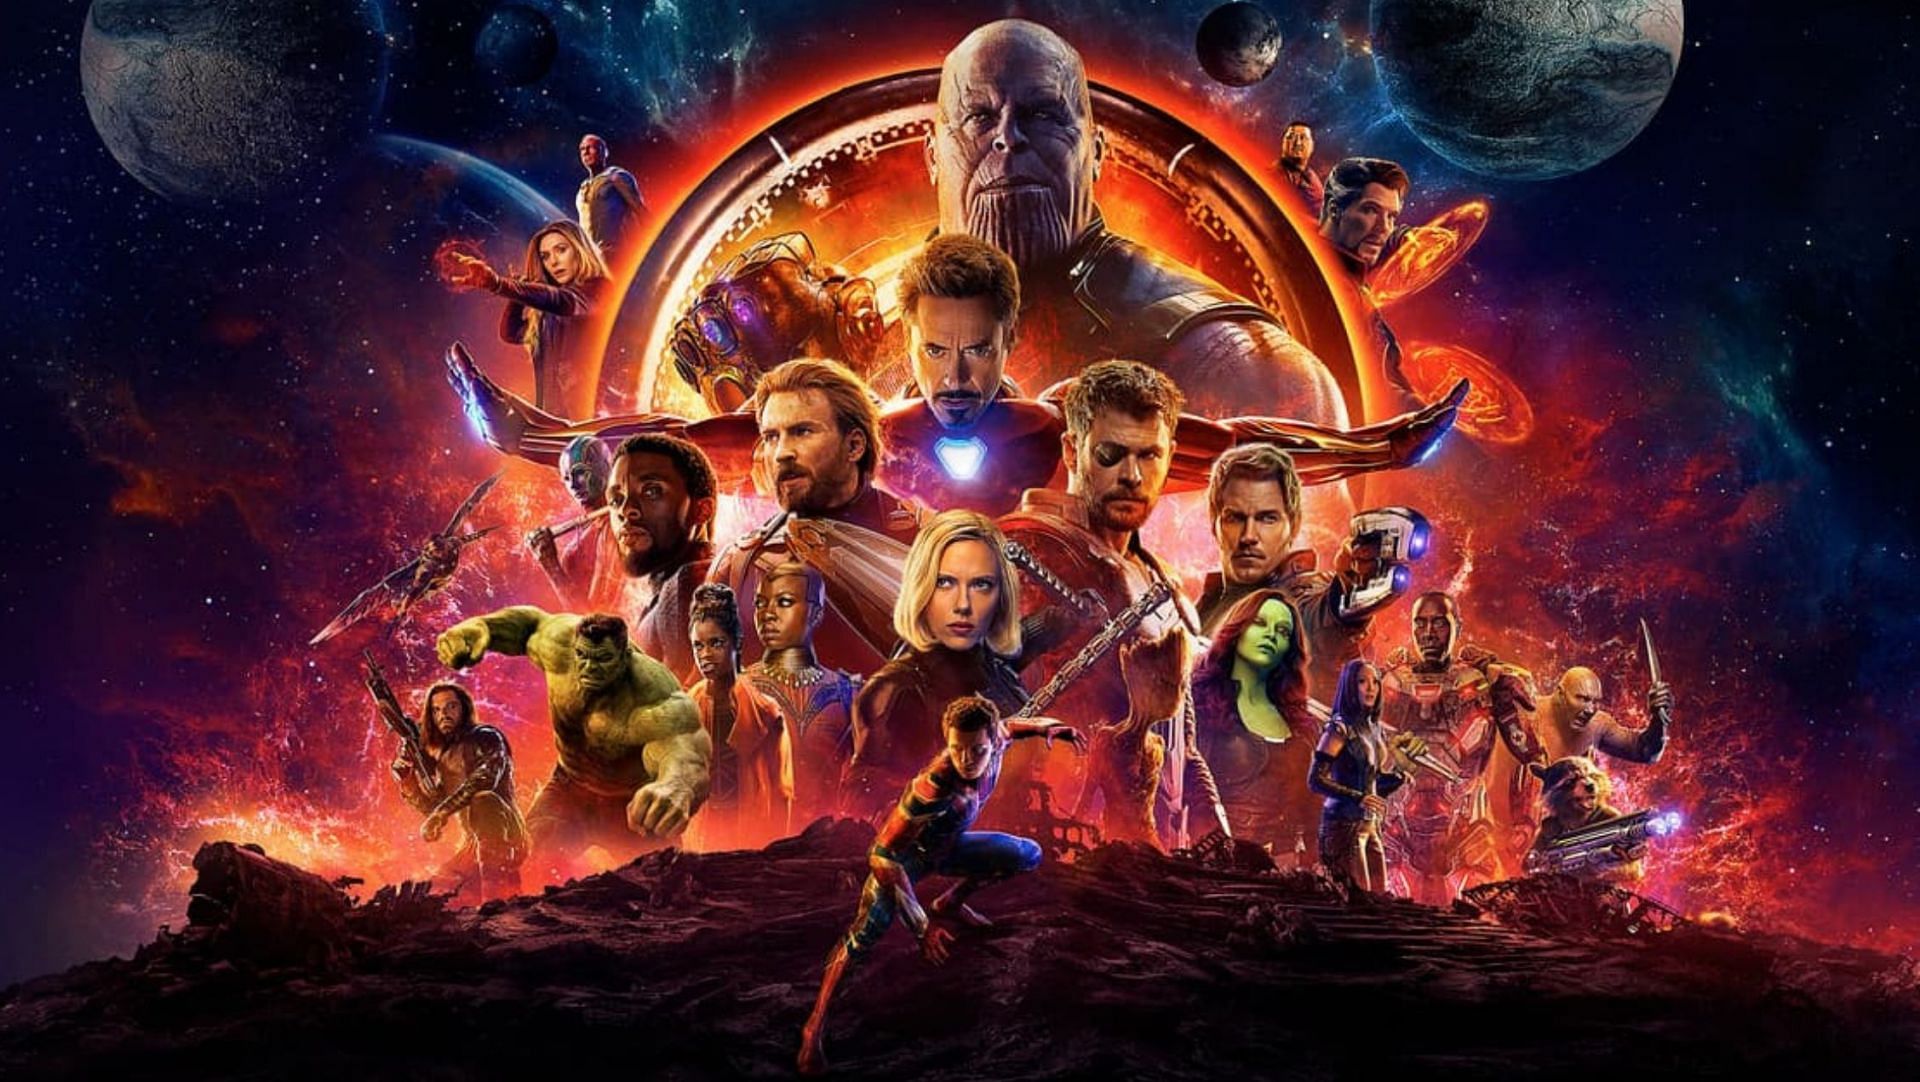 Marvel: Avengers: Endgame vs. Avengers: Infinity War - Which movie